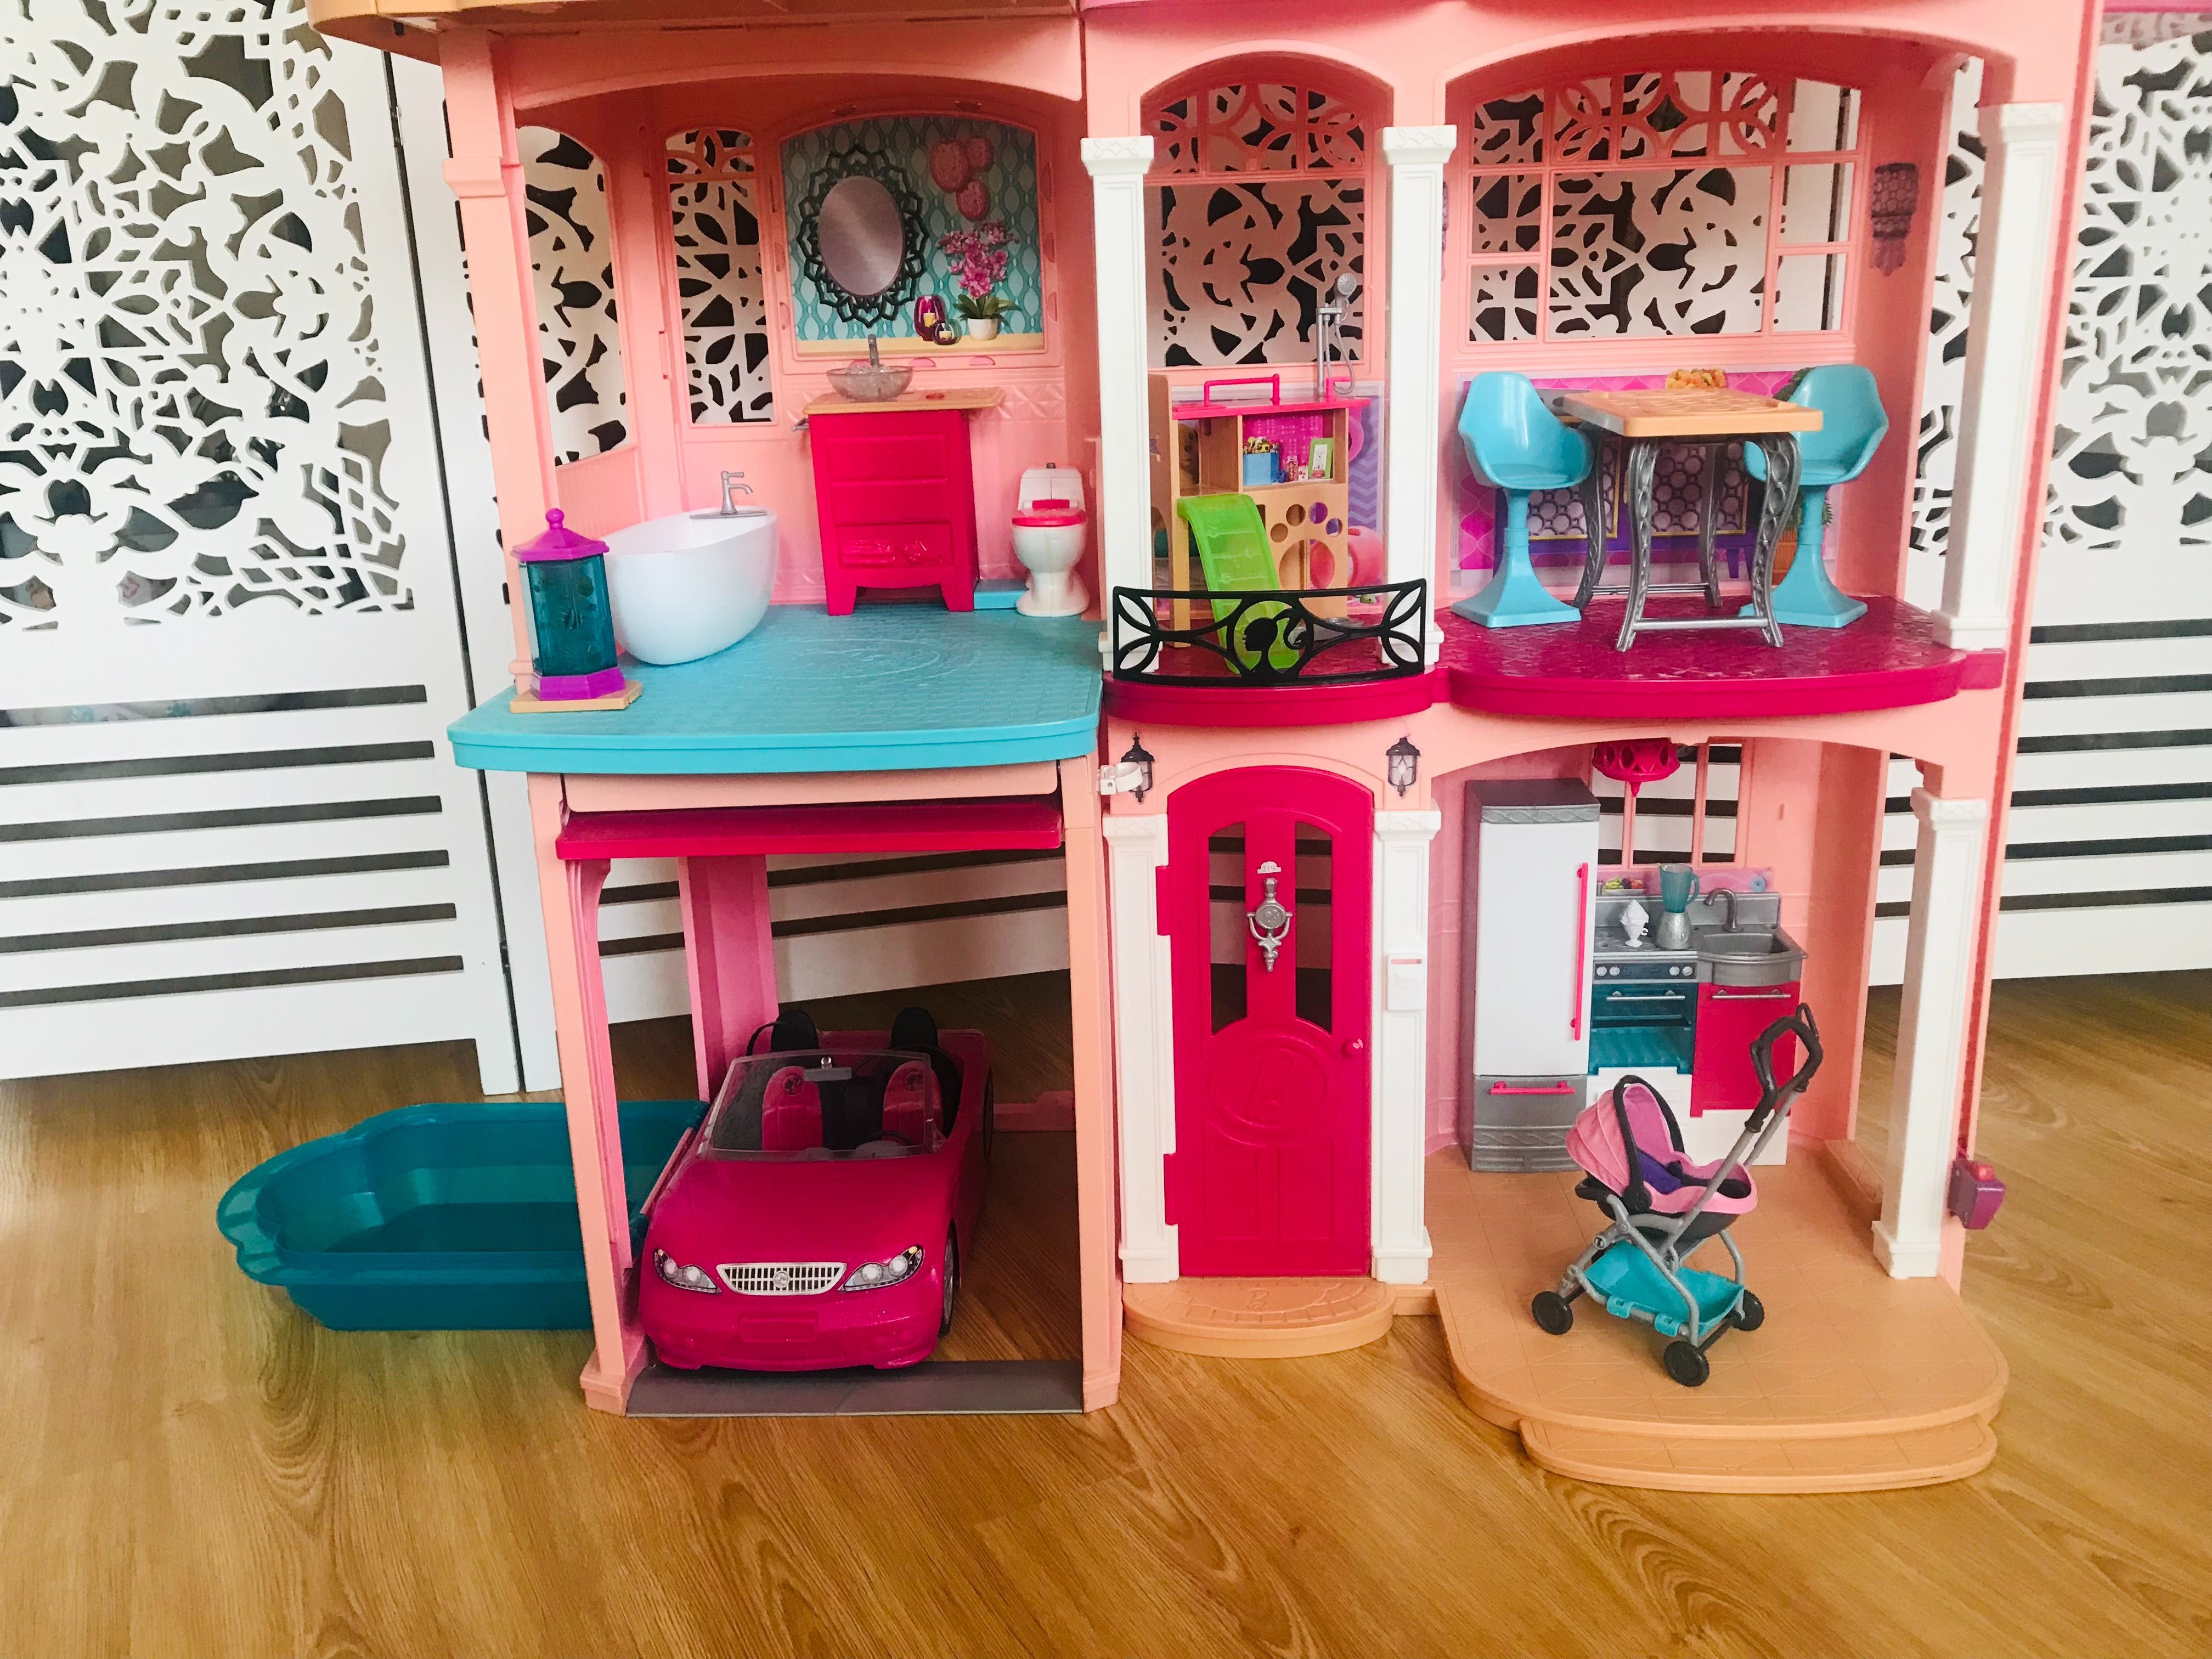 Рожева мрія - величезний будинок barbie - три поверхи краси dreamhouse